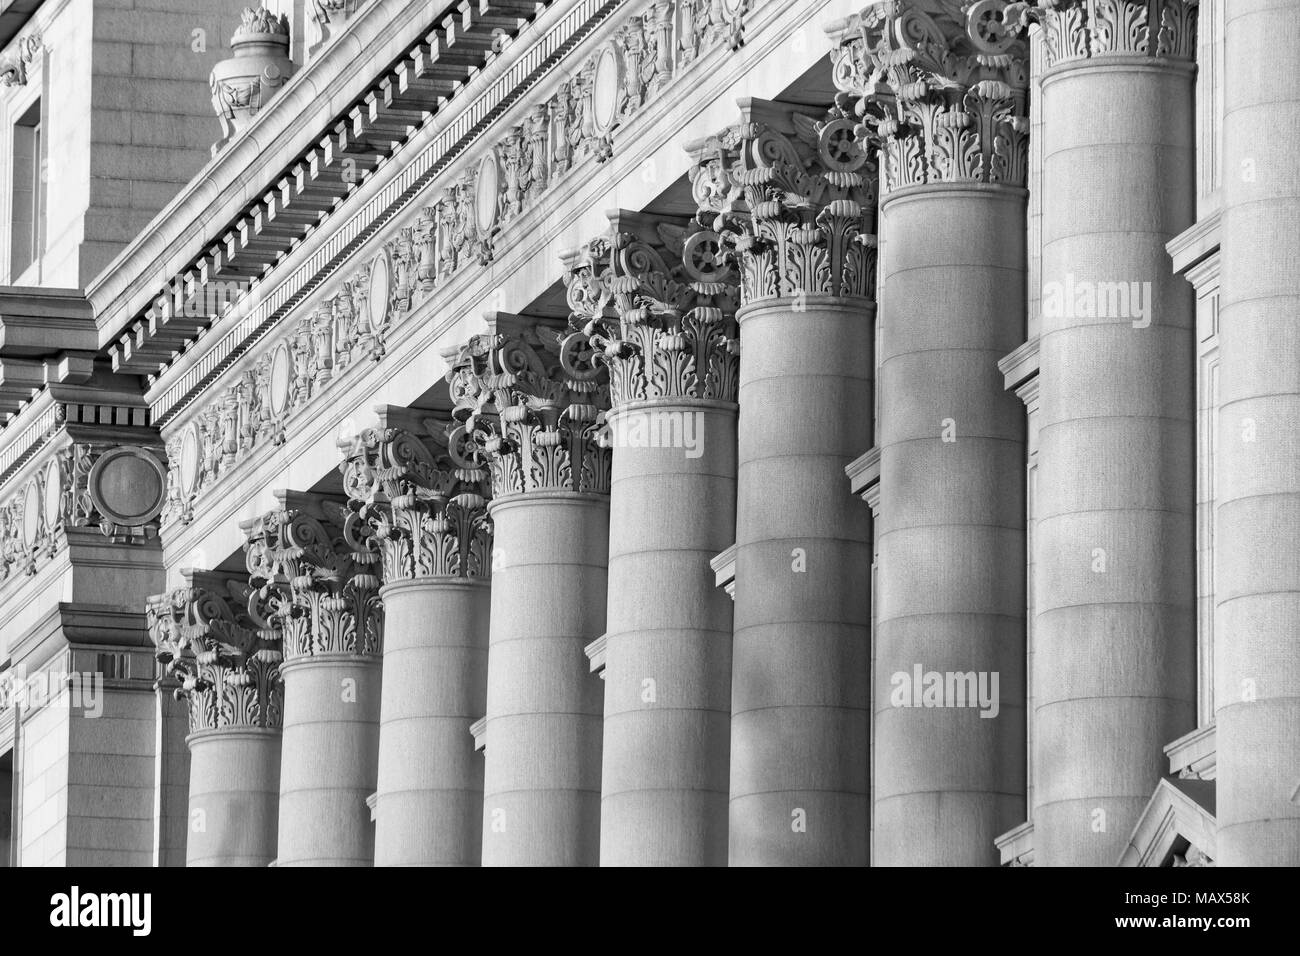 Une série de colonnes corinthiennes tourné au coucher du soleil en noir et blanc, cela a été pris dans le sud de Manhattan à l'ancienne douane Banque D'Images